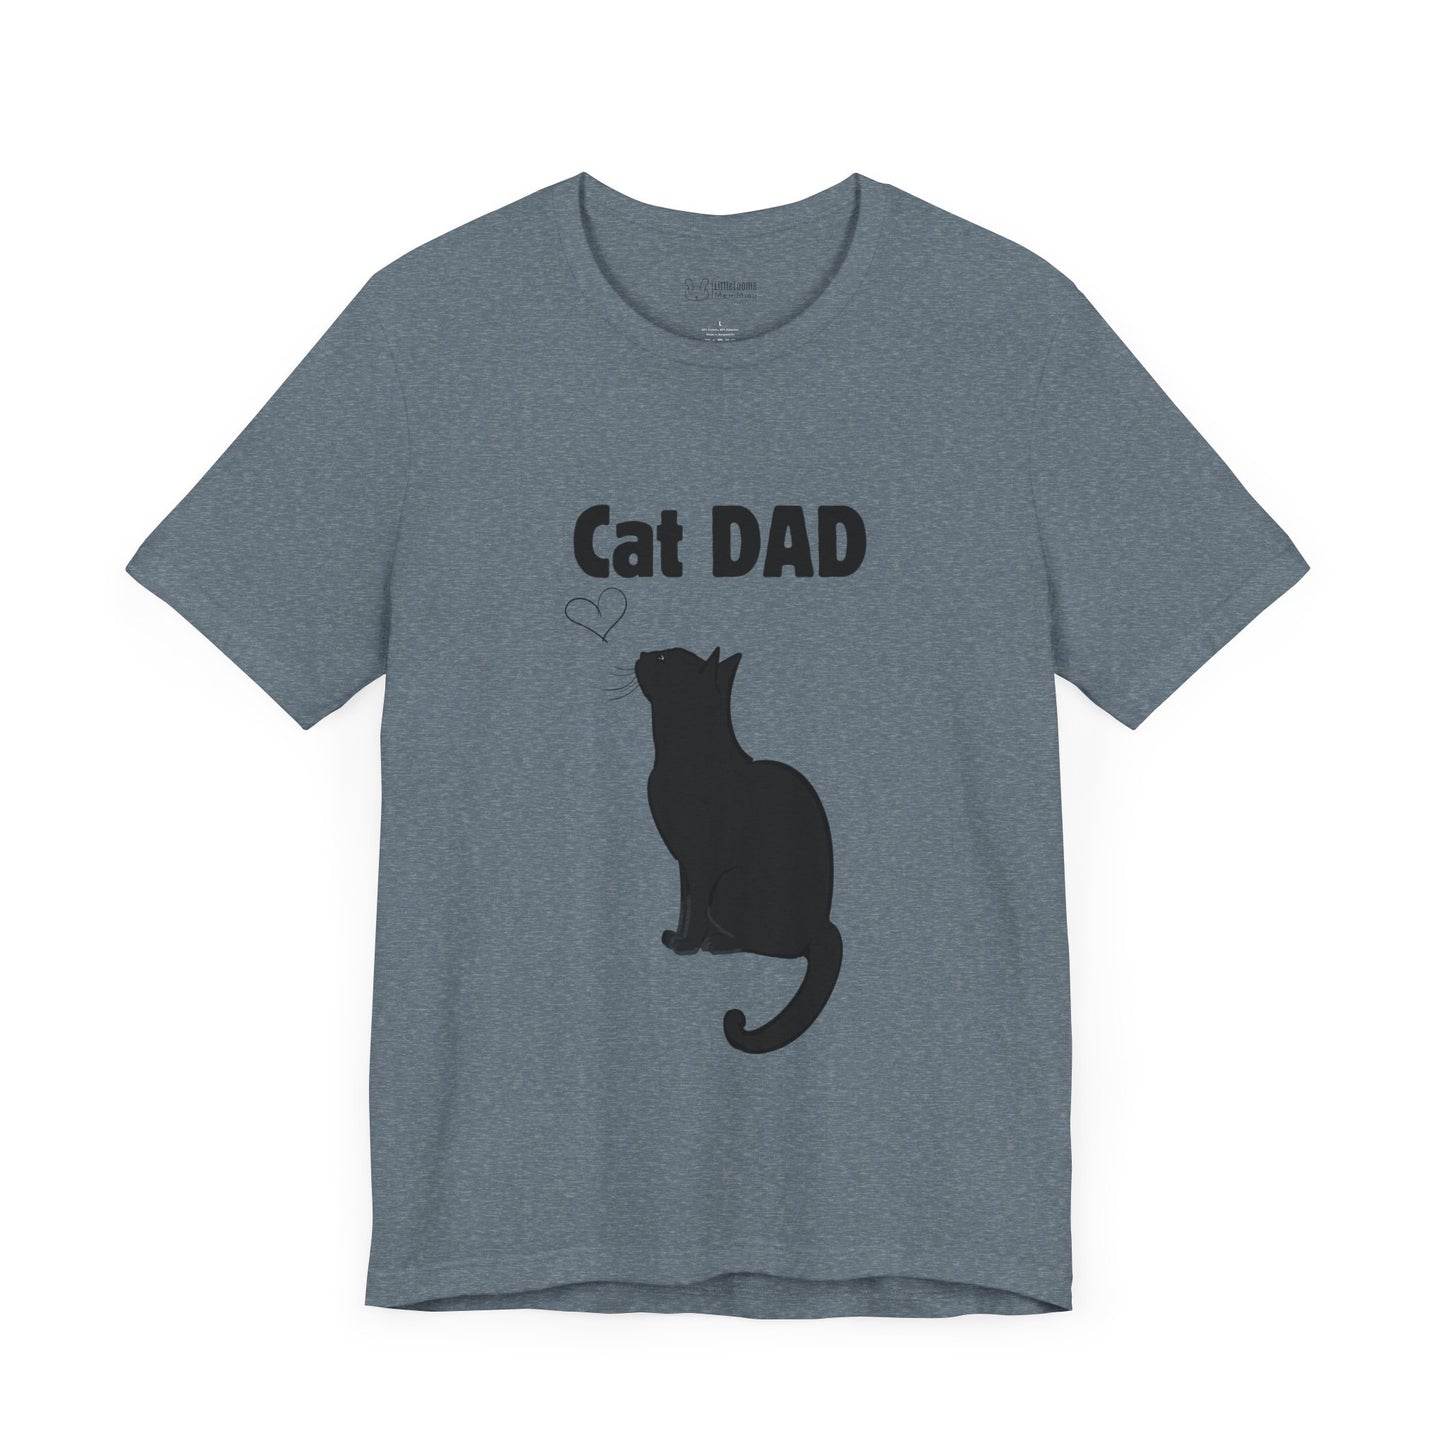 Kurzärmliges T-Shirt mit Katzenmotiv für Väter